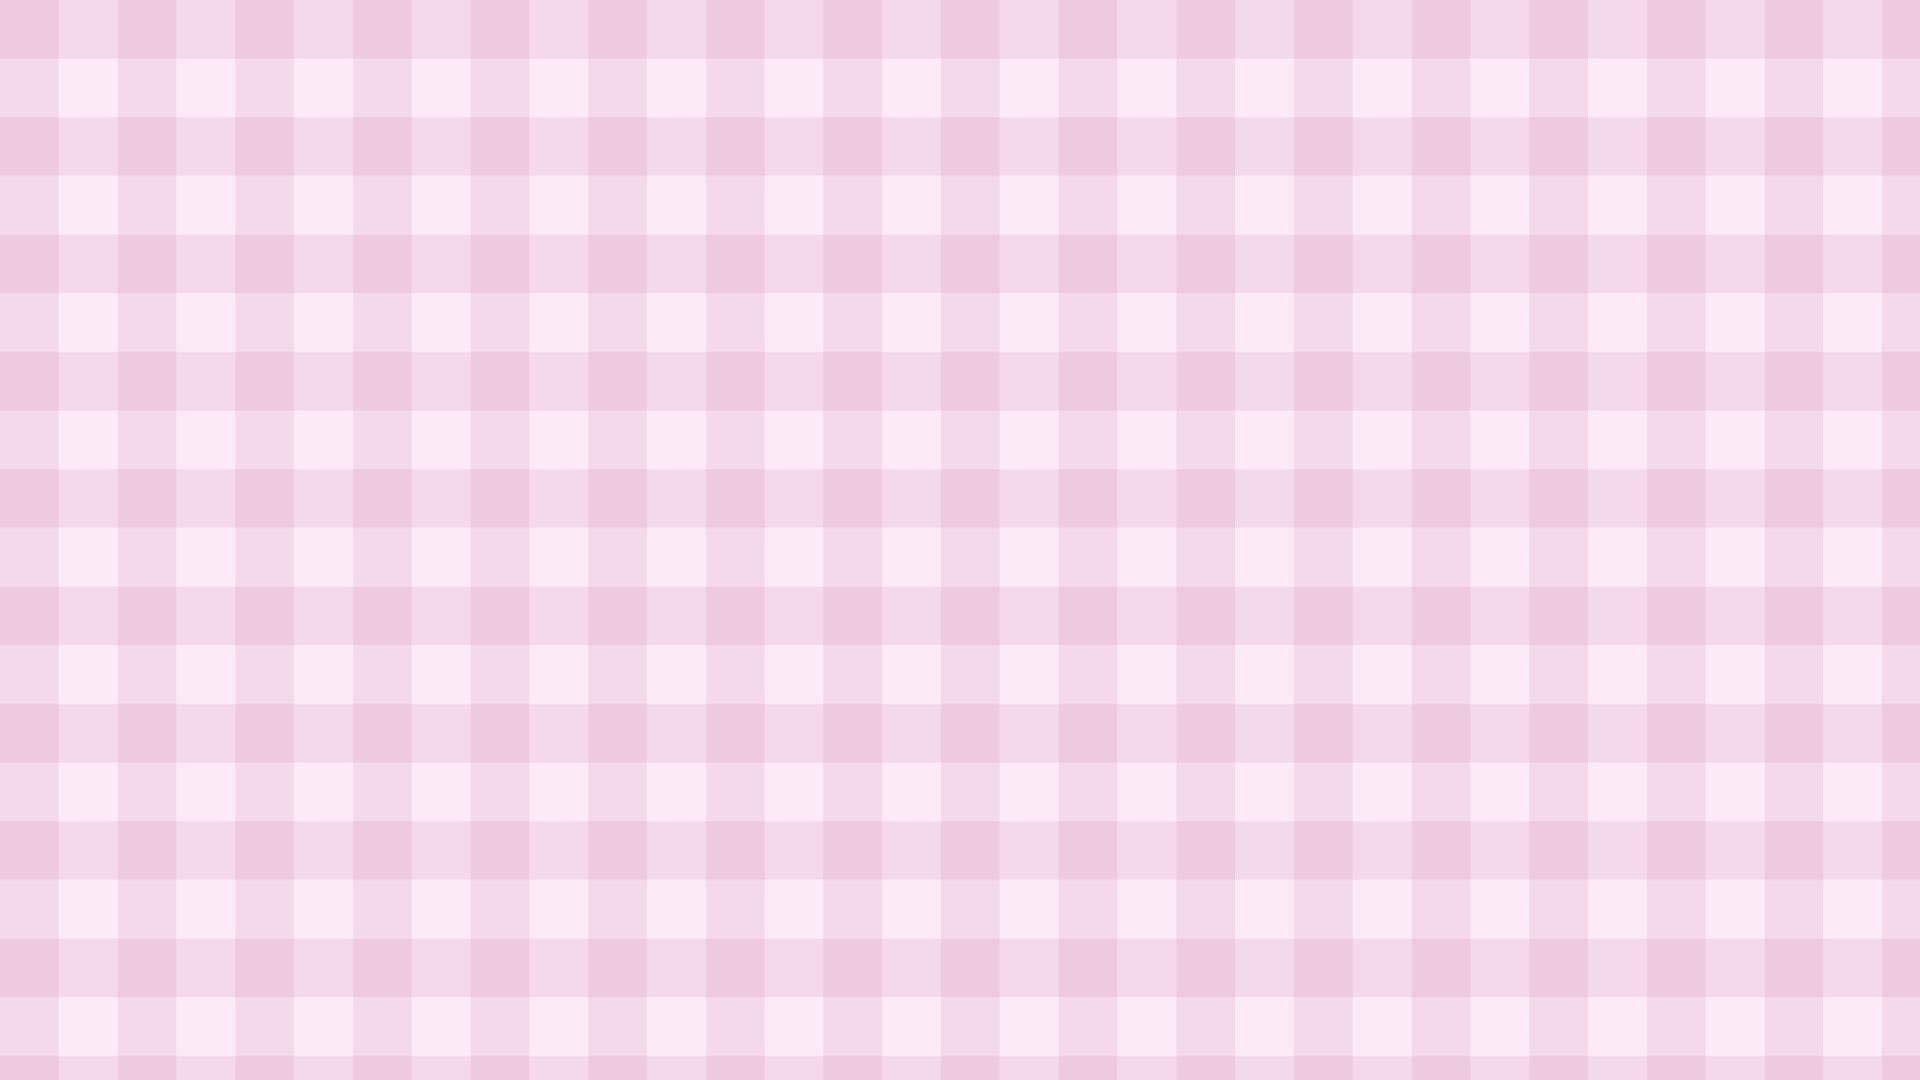 Hãy cùng ngắm nhìn bức ảnh phong cách bàn cờ ô màu hồng tuyệt đẹp này với những ô vuông toát lên một sự thanh lịch vô cùng sang trọng. Điều này sẽ khiến bạn cảm thấy thật cuốn hút và thích thú.